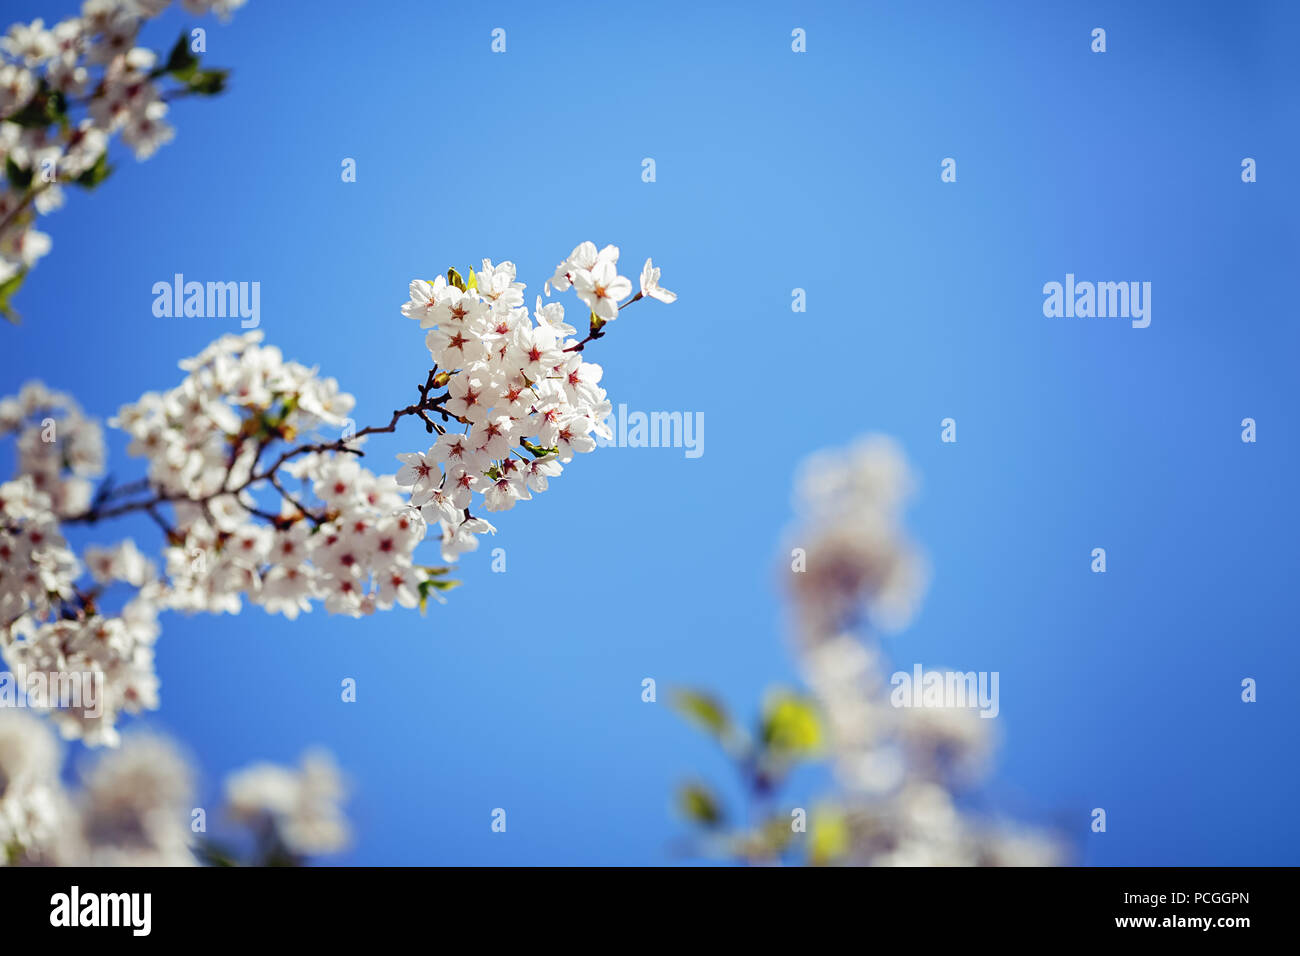 Karte mit schönen blühenden weißen sakura Blumen Baum auf blauen Himmel Hintergrund im Garten Park außerhalb, kopieren Platz für Text Stockfoto